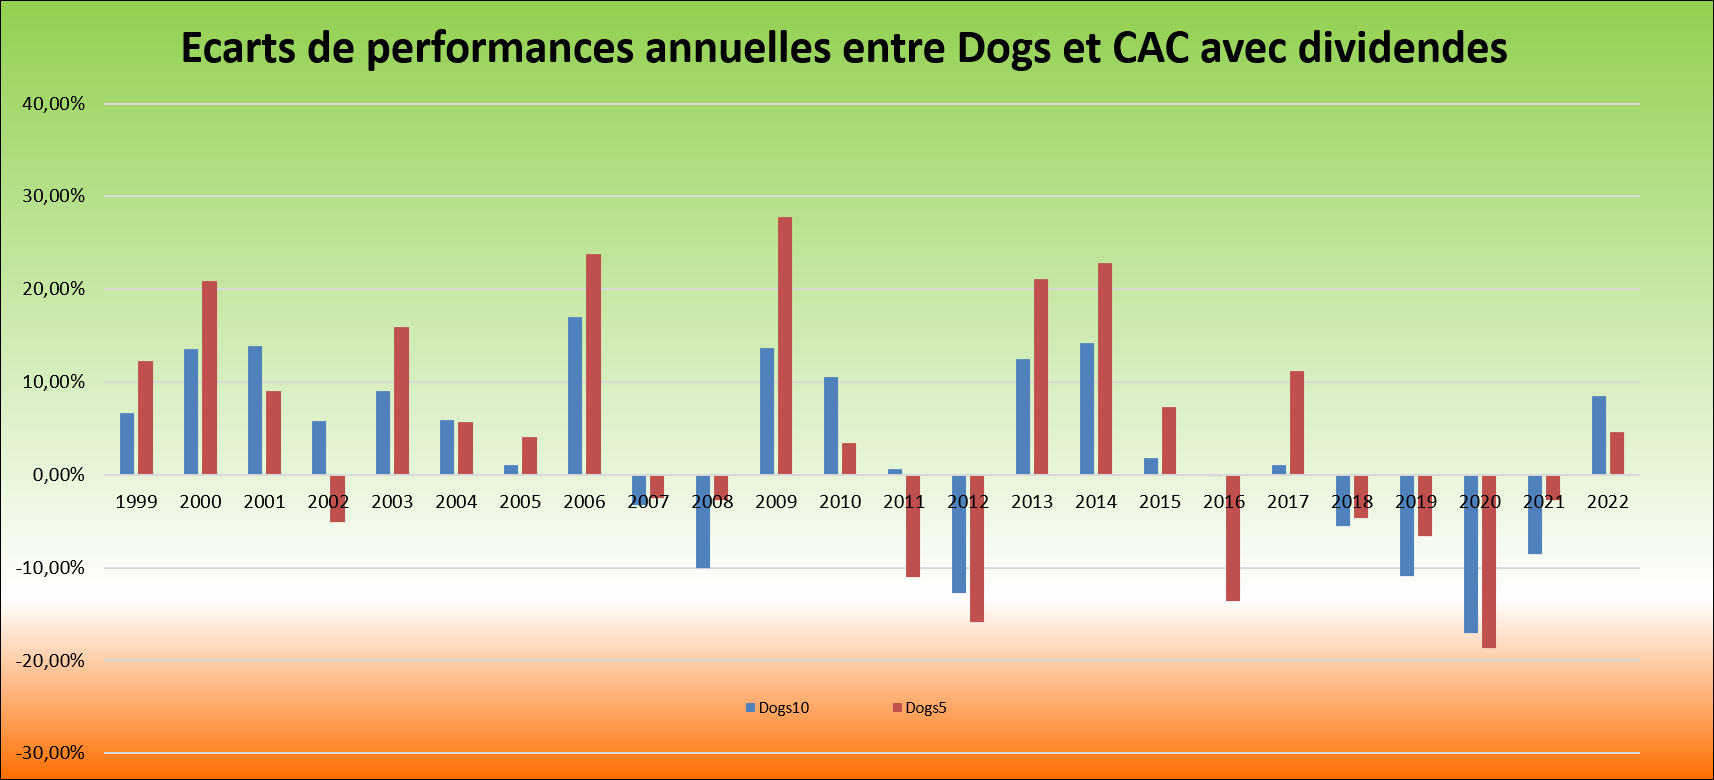 Illustration des écarts de performances des portefeuilles dogs par rapport au CAC40 avec dividende sur les vingt-quatre ans écoulés de 1999 à 2022 inclus